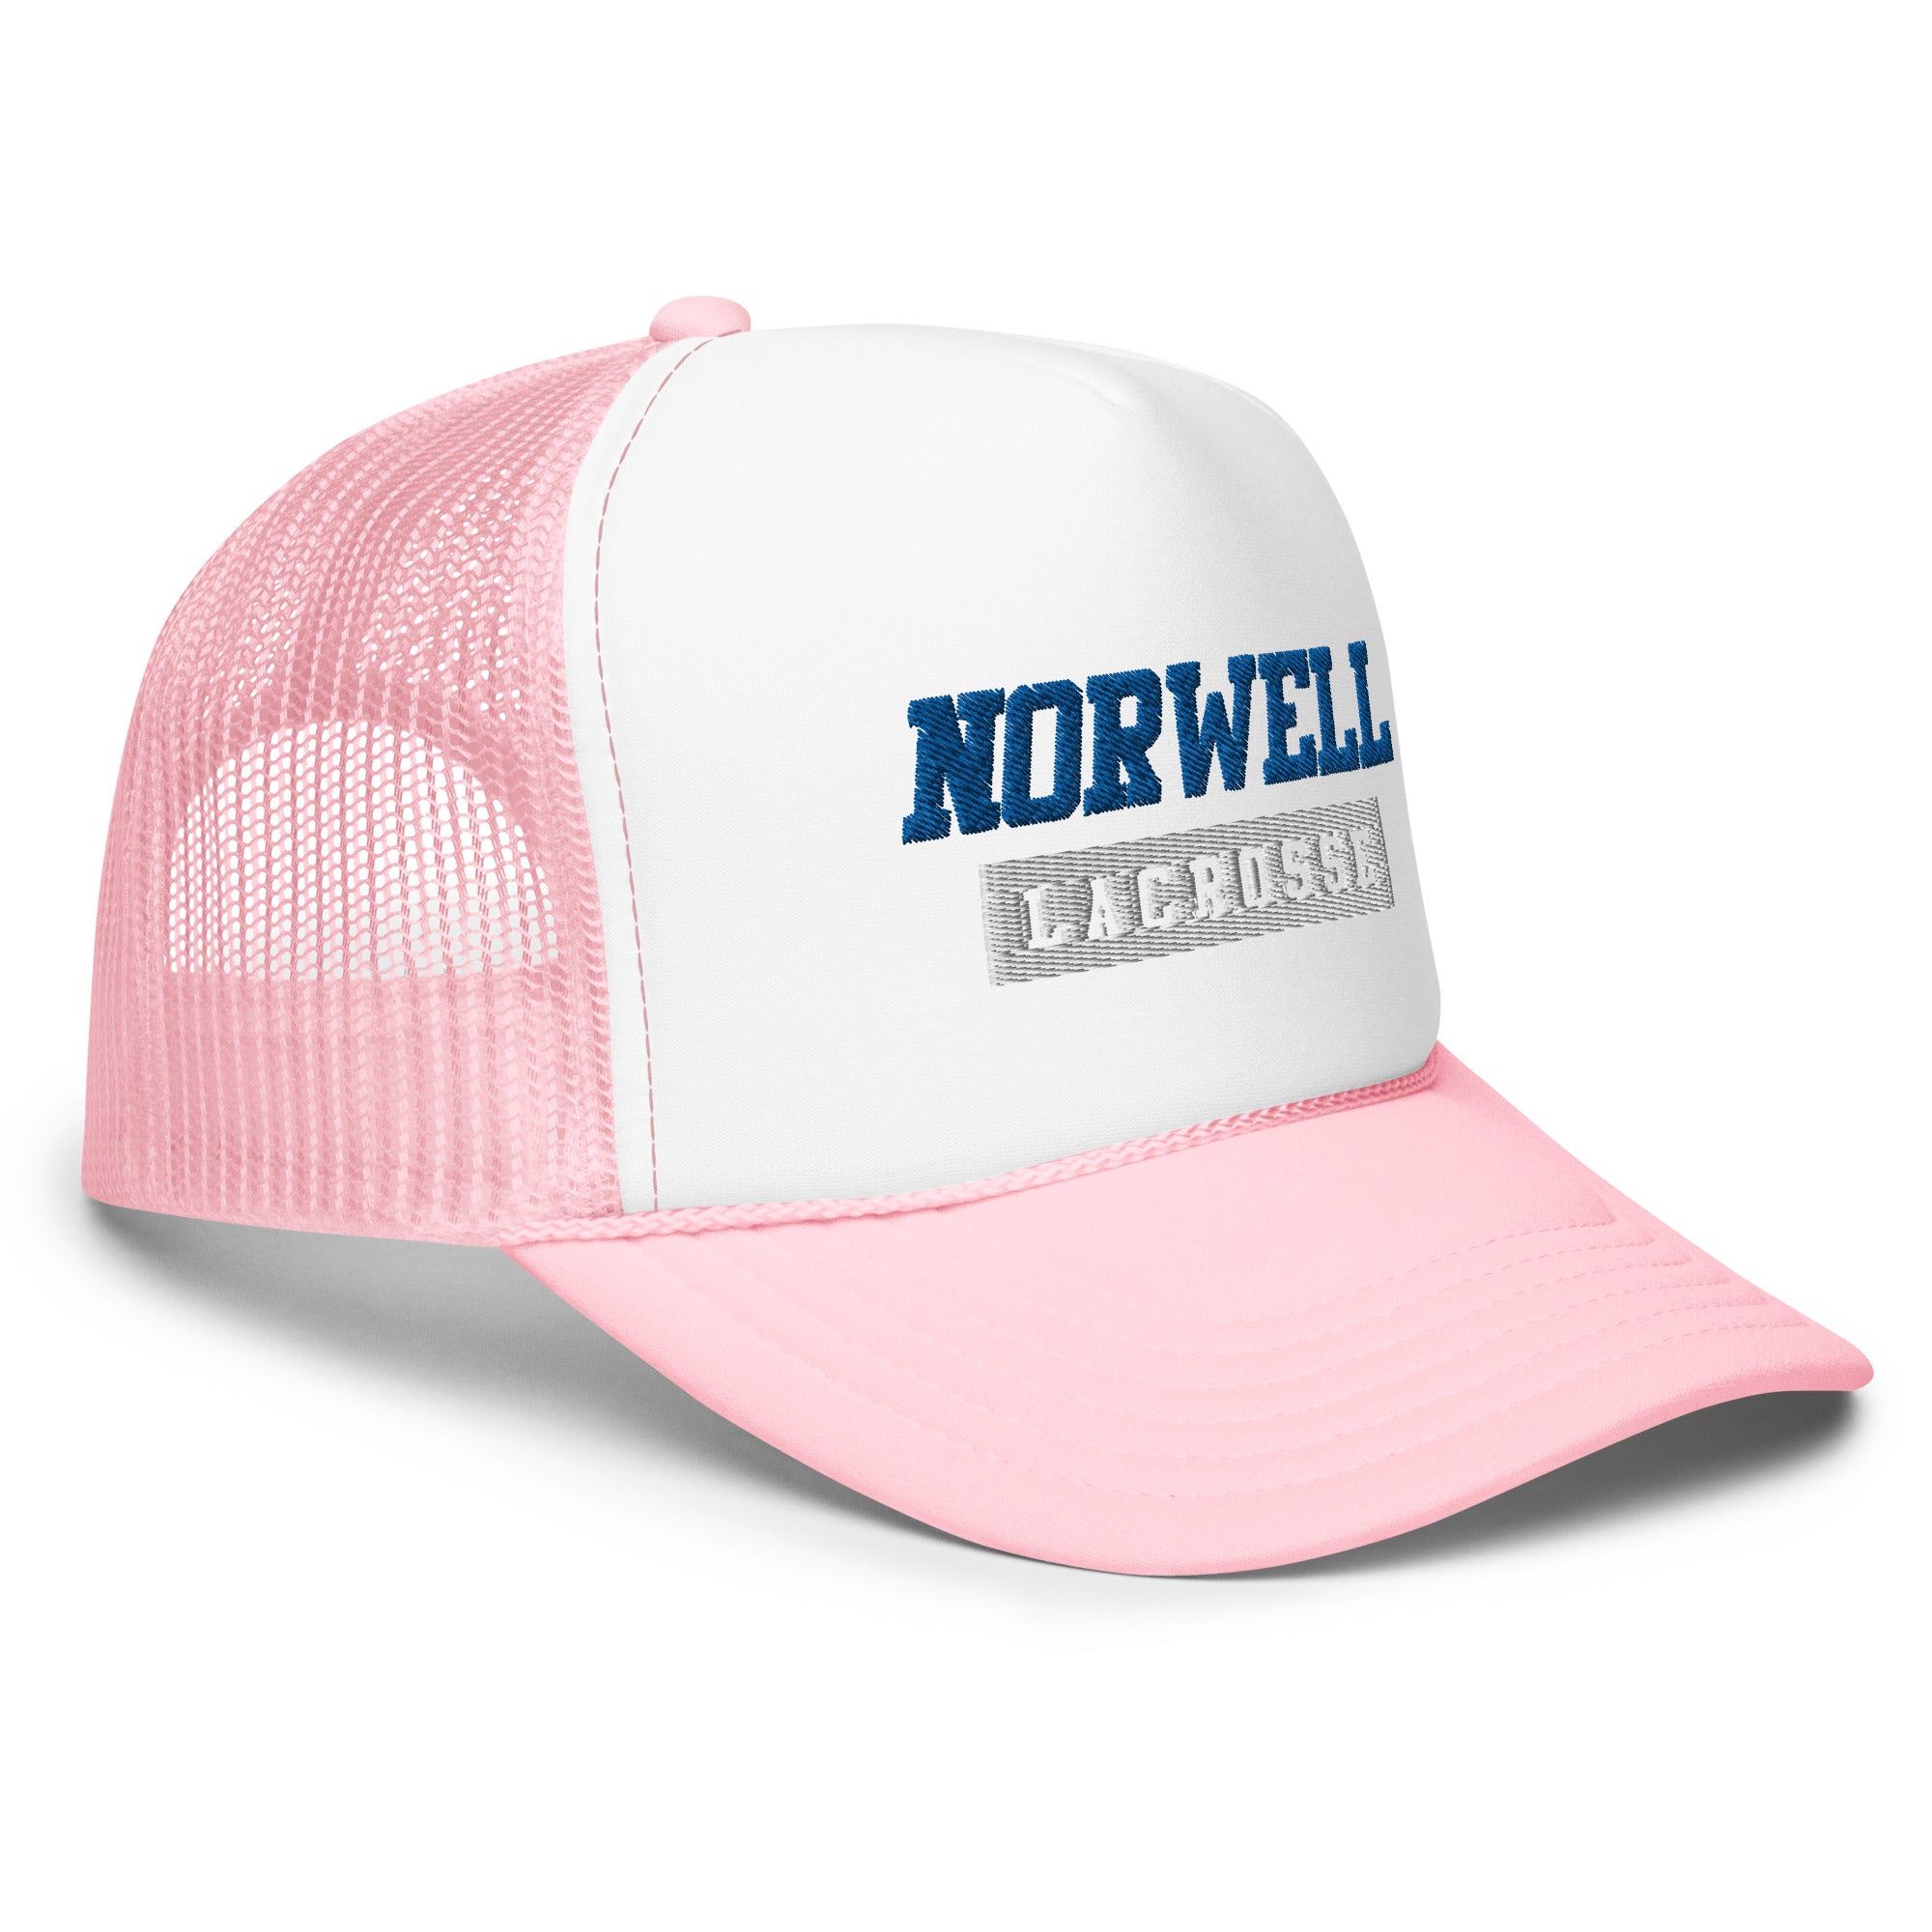 Norwell Foam trucker hat